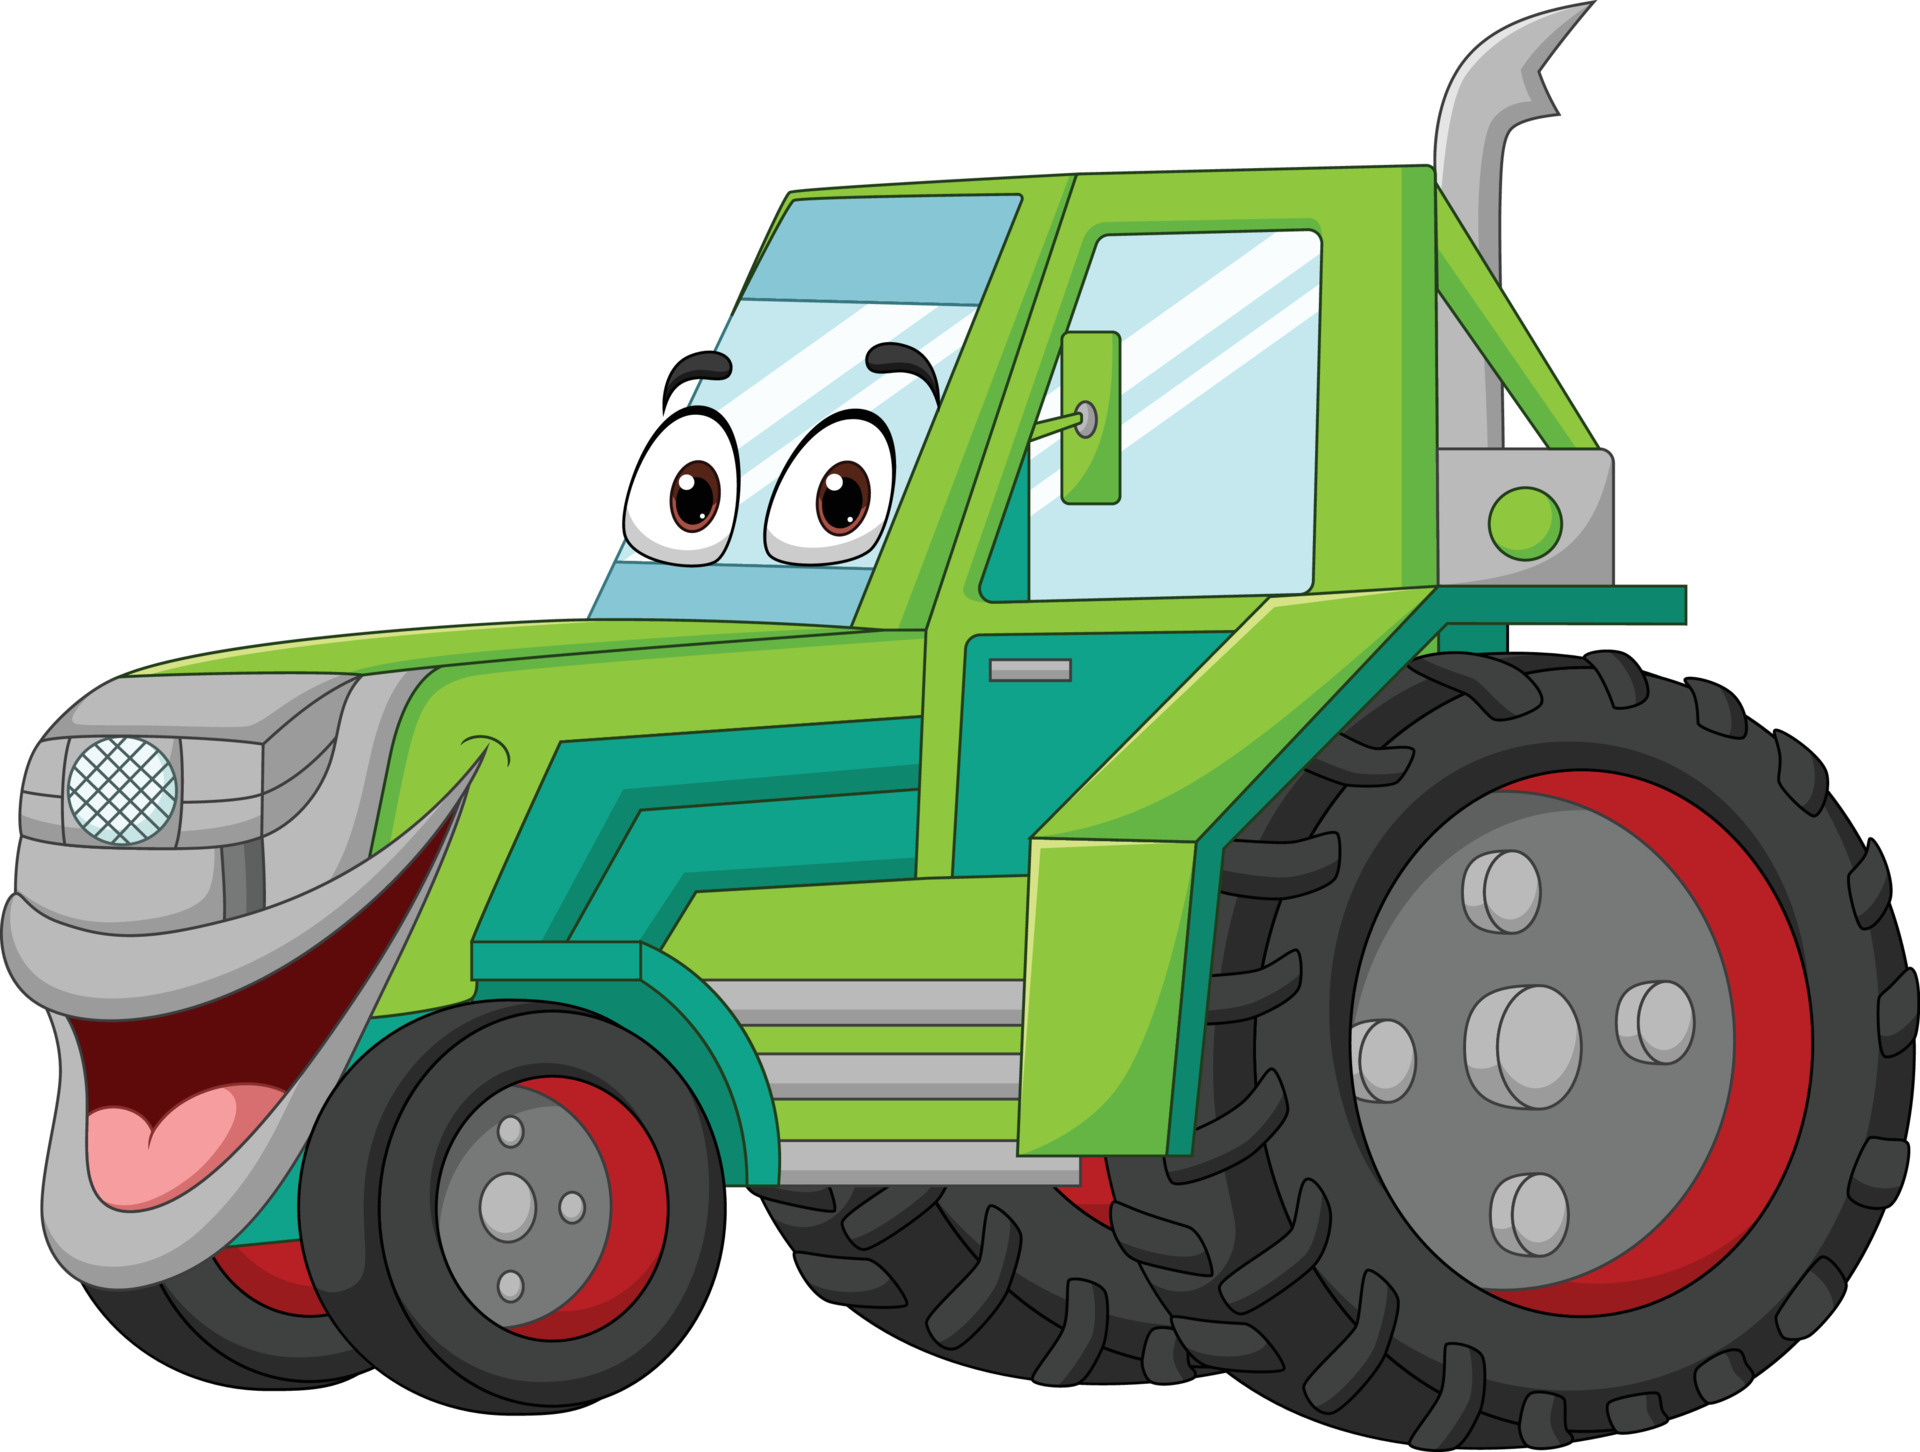 personagem de mascote de trator verde engraçado dos desenhos animados  5332214 Vetor no Vecteezy